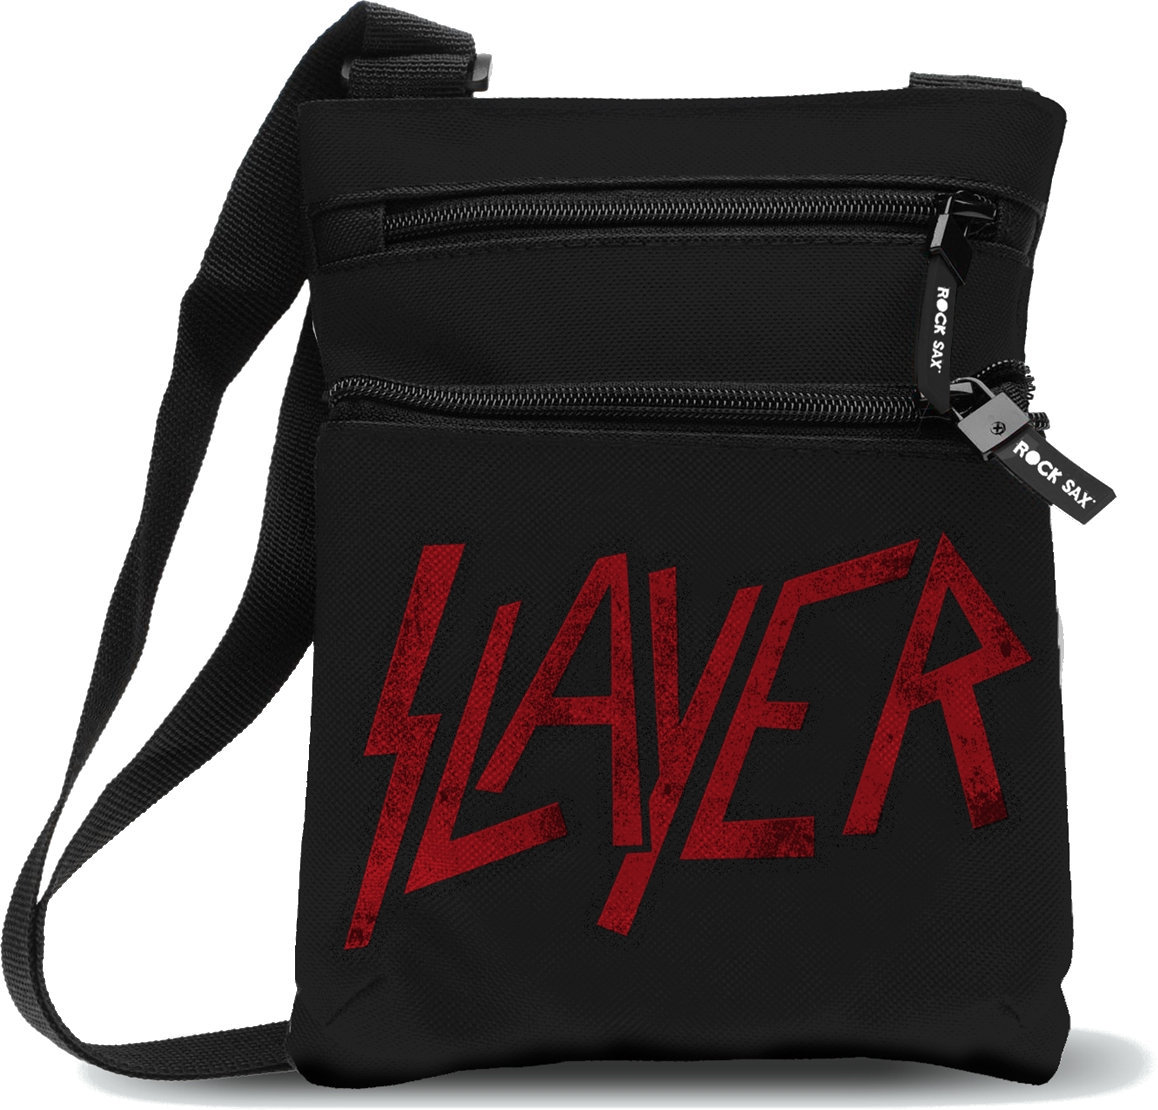 Tracolla Slayer Logo Record Tracolla